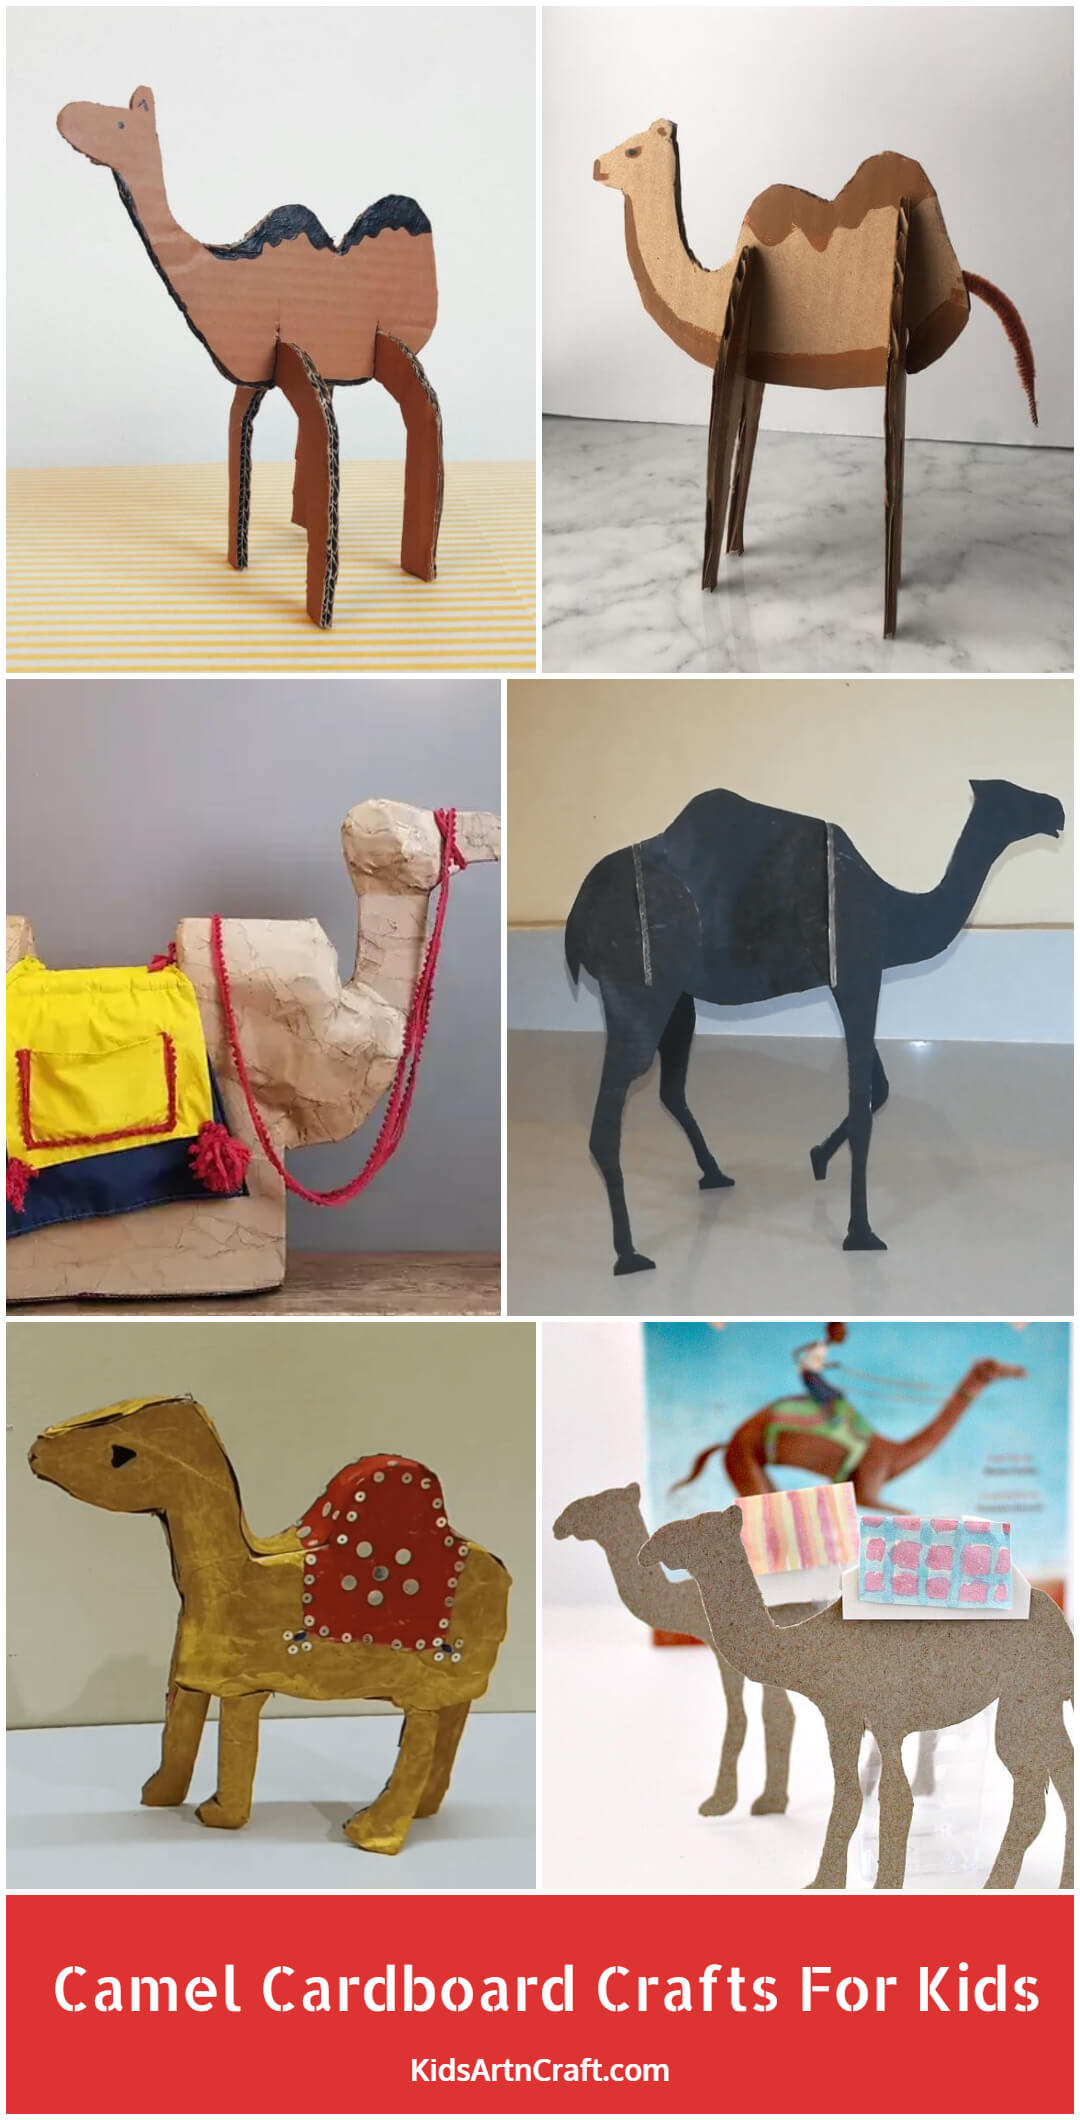 Camel Cardboard Crafts For Kids